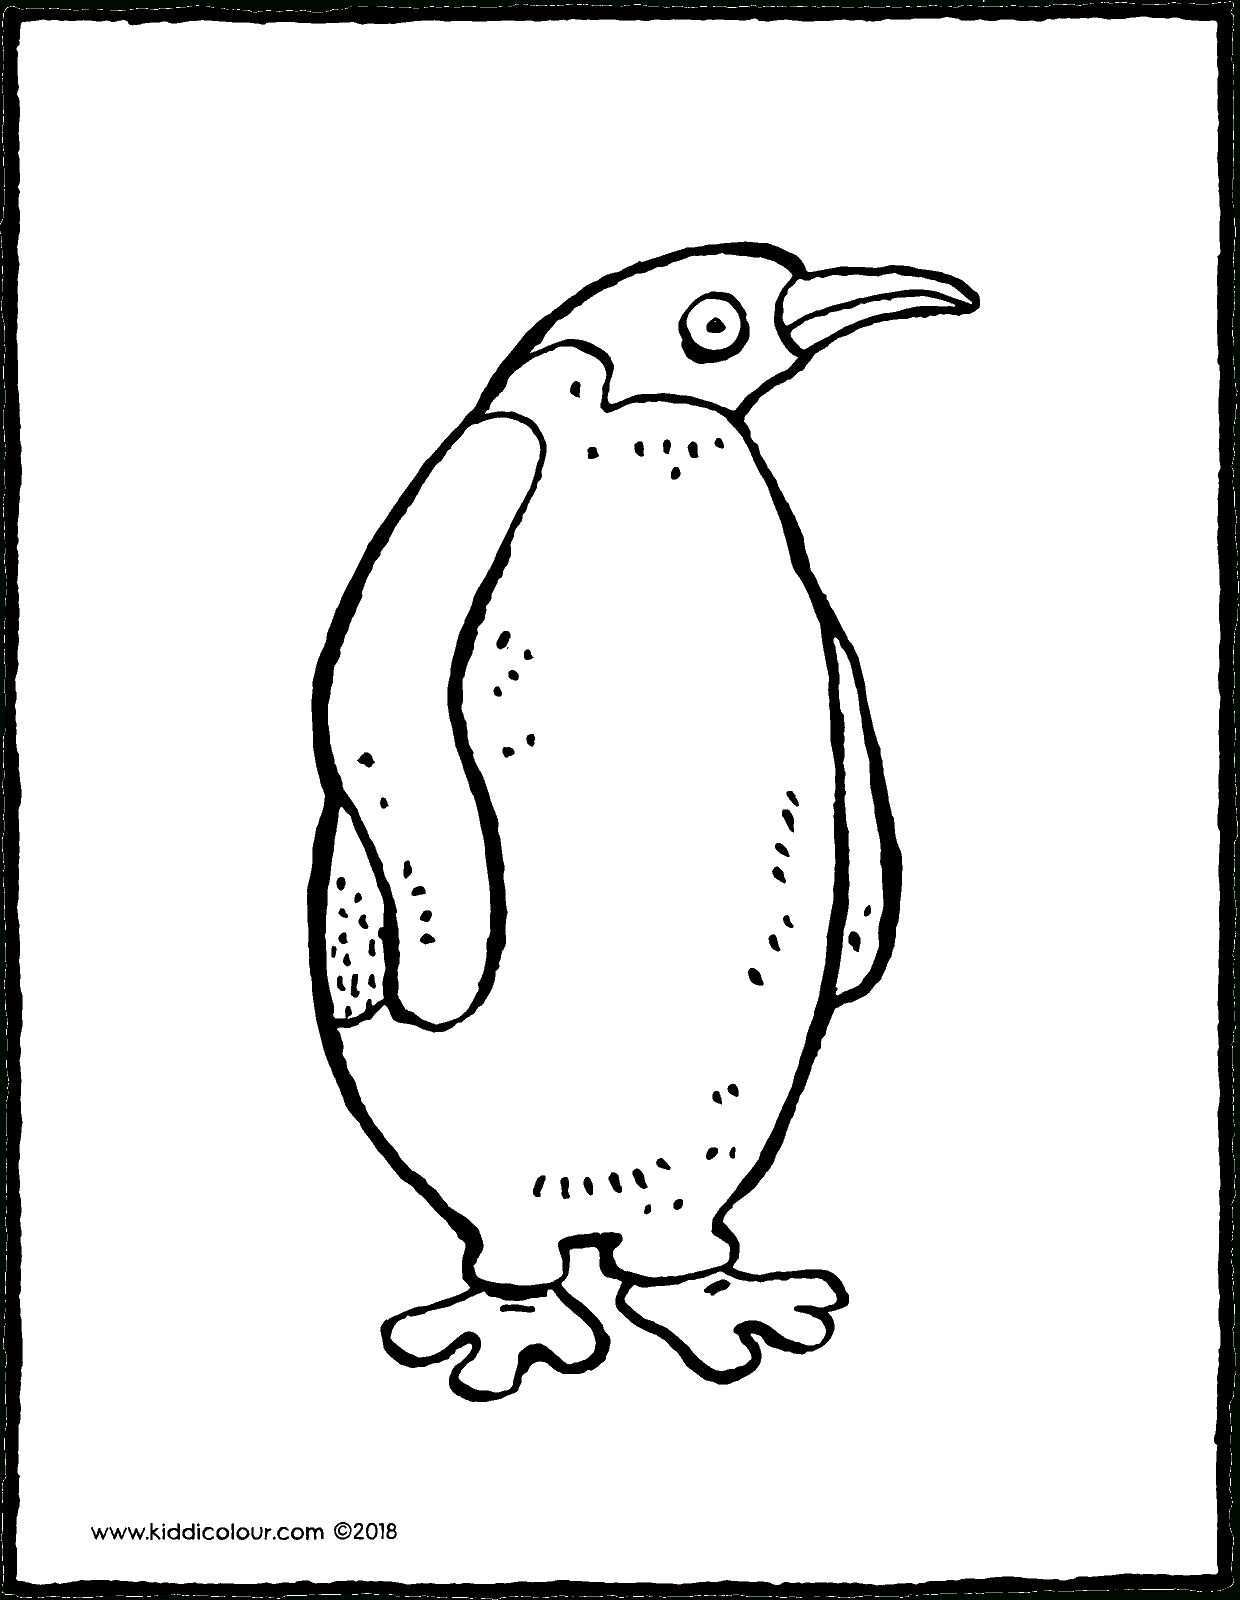 10 Besser Pinguin Malvorlage Ausdruck 2020 In 2020 Pinguine Malvorlagen Druckbare Bilder